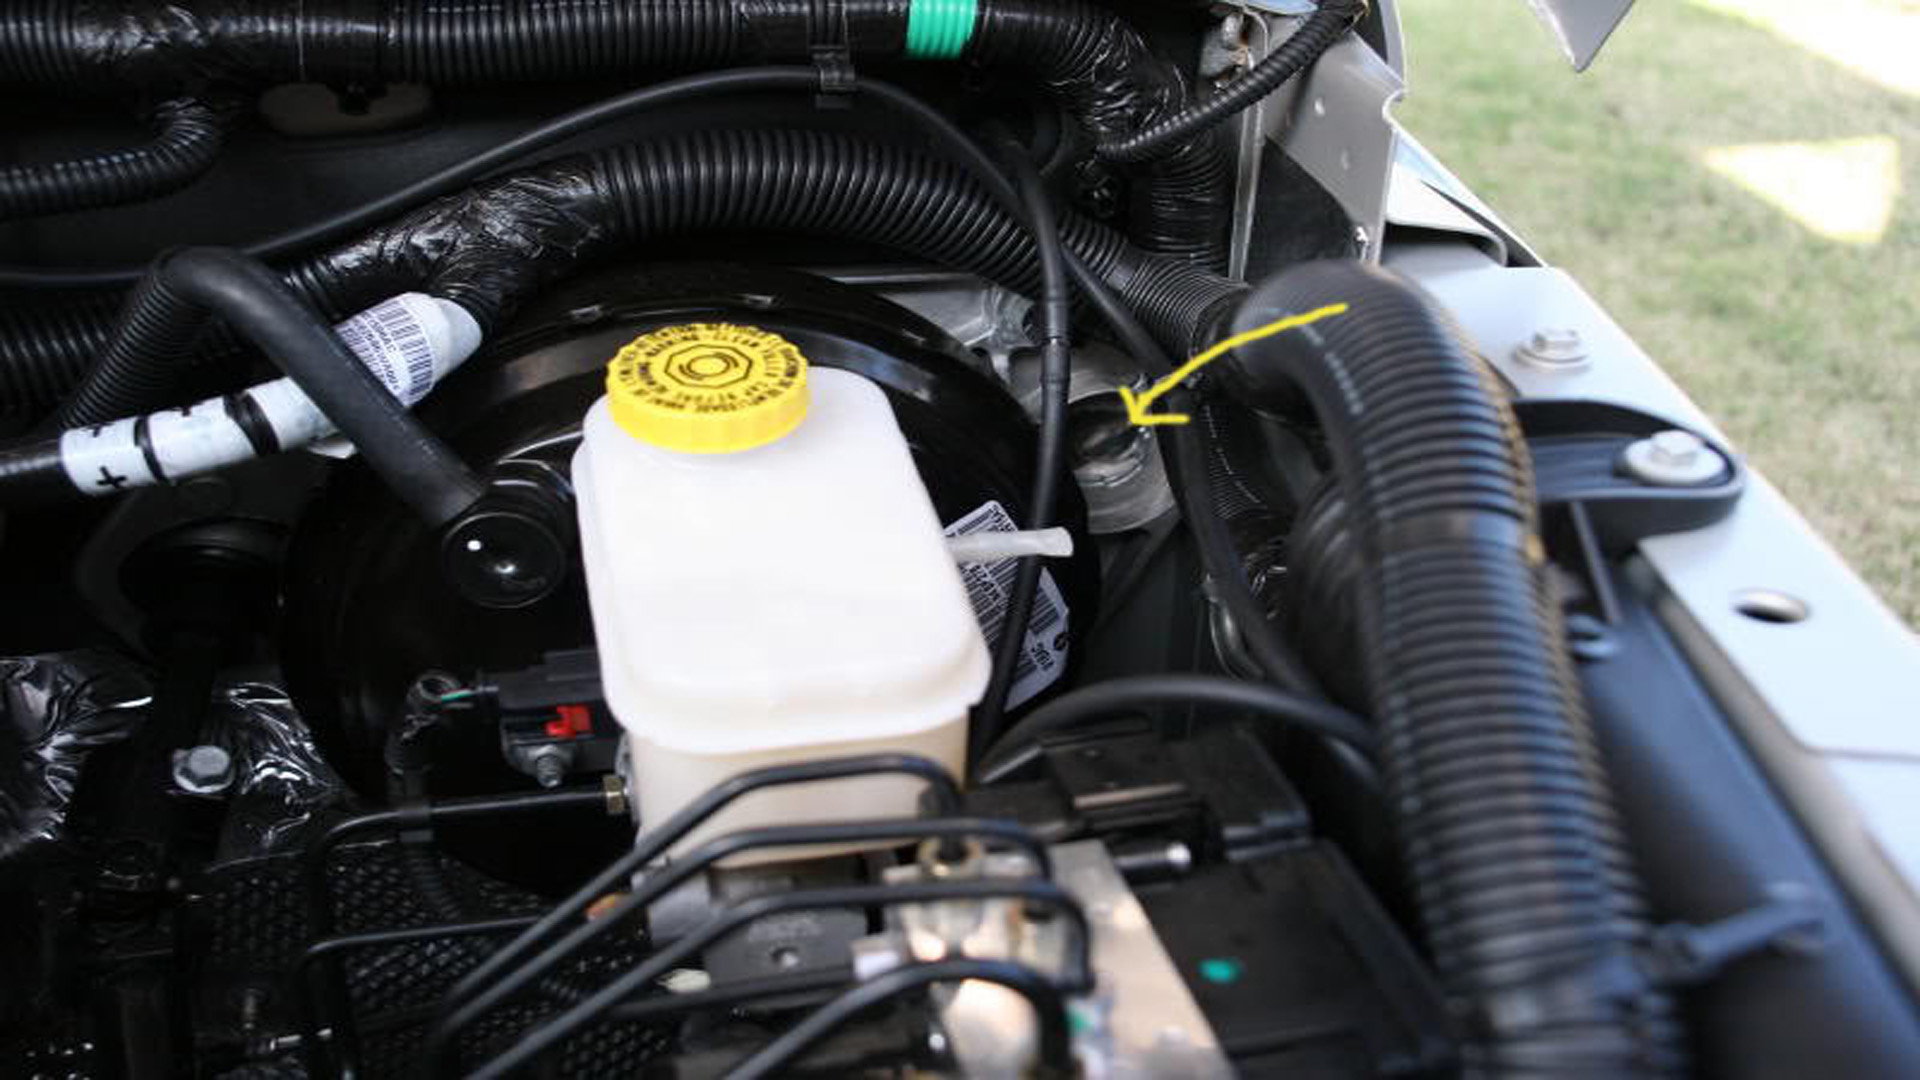 Jeep Wrangler JK: How to Replace Brake Master Cylinder | Jk-forum